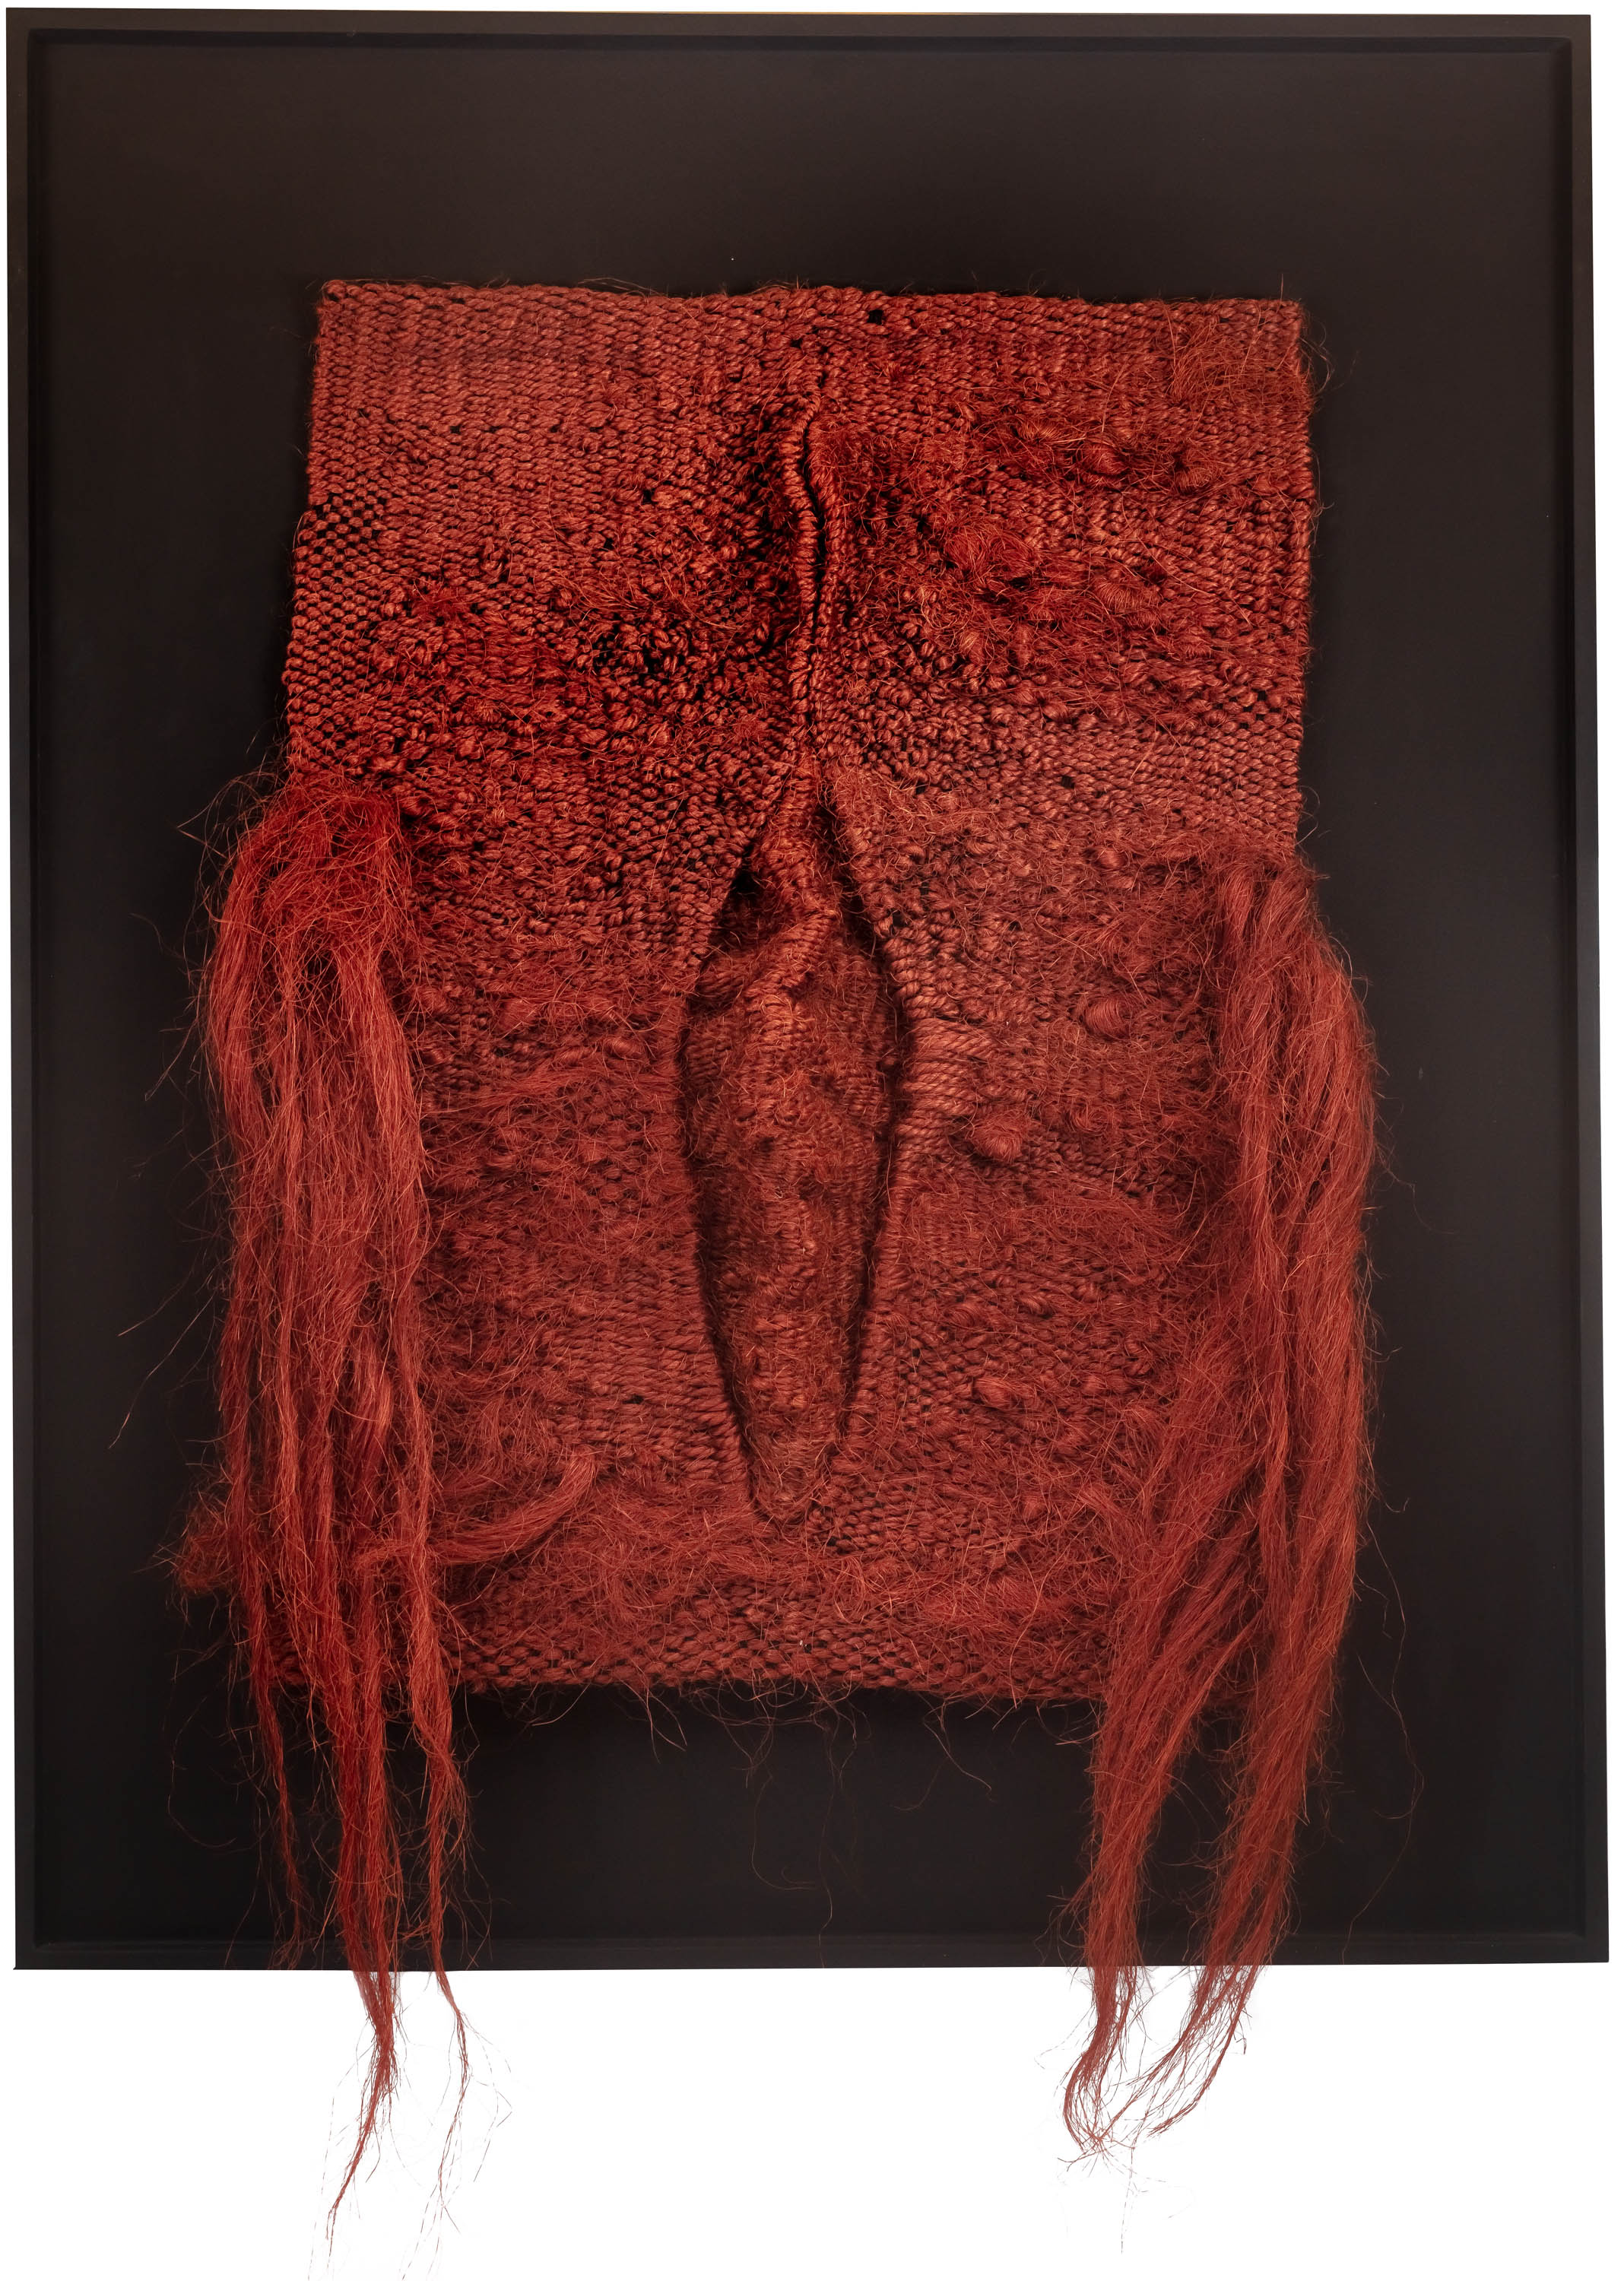 Magdalena Abakanowicz | Red Hair, 1970 -1972